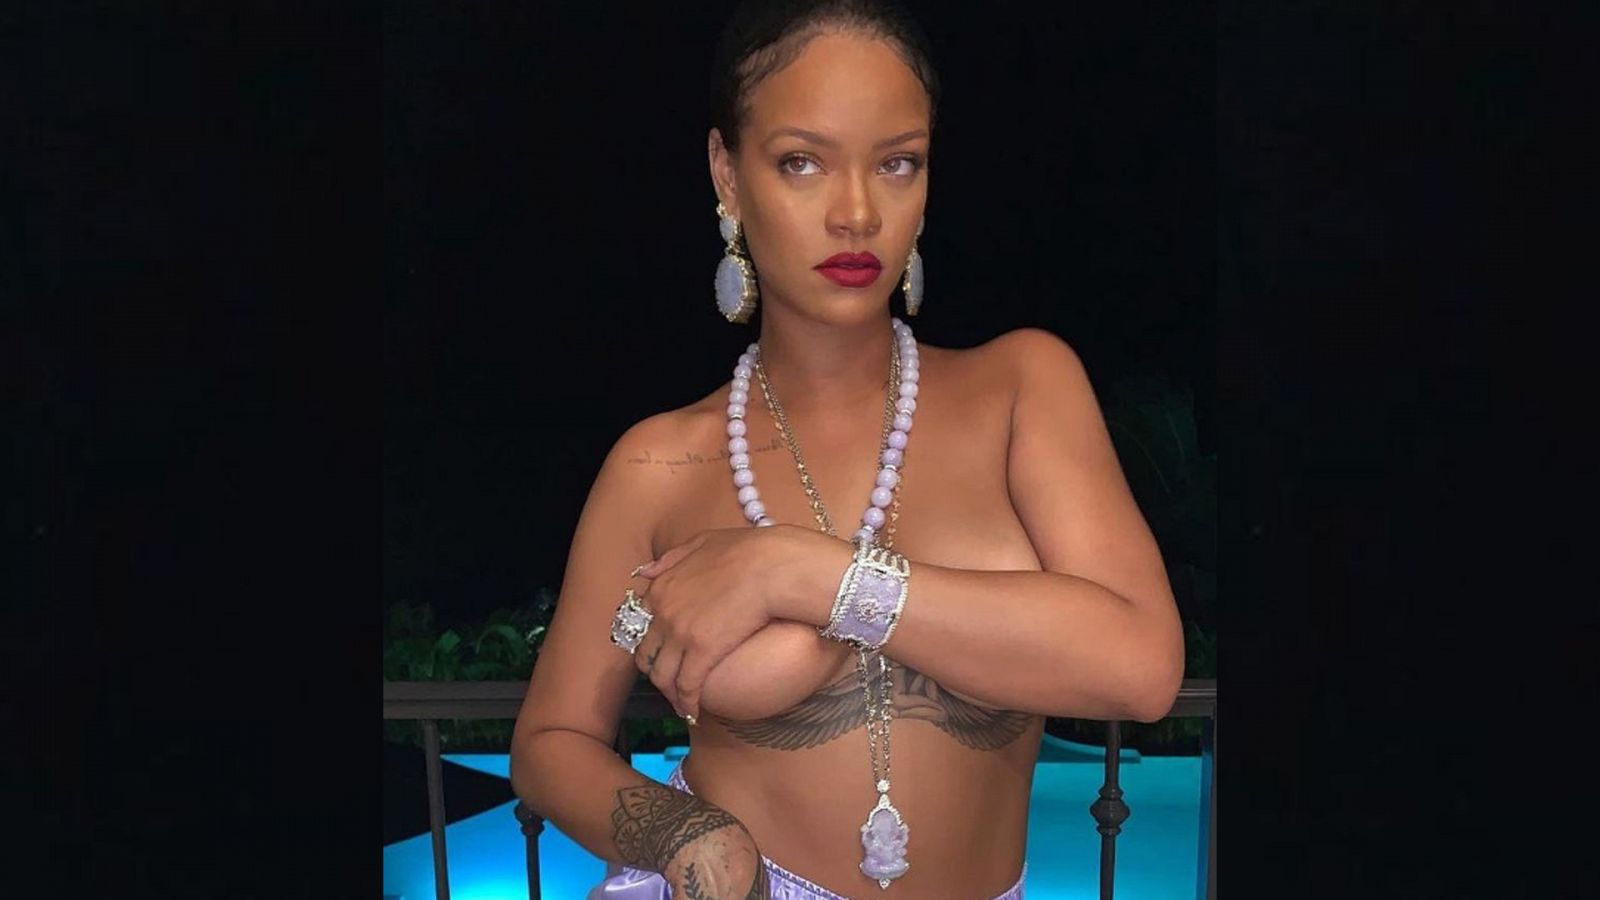 La cantante Rihanna sorprende posando con tan solo un cullotte y con mucha joyas.